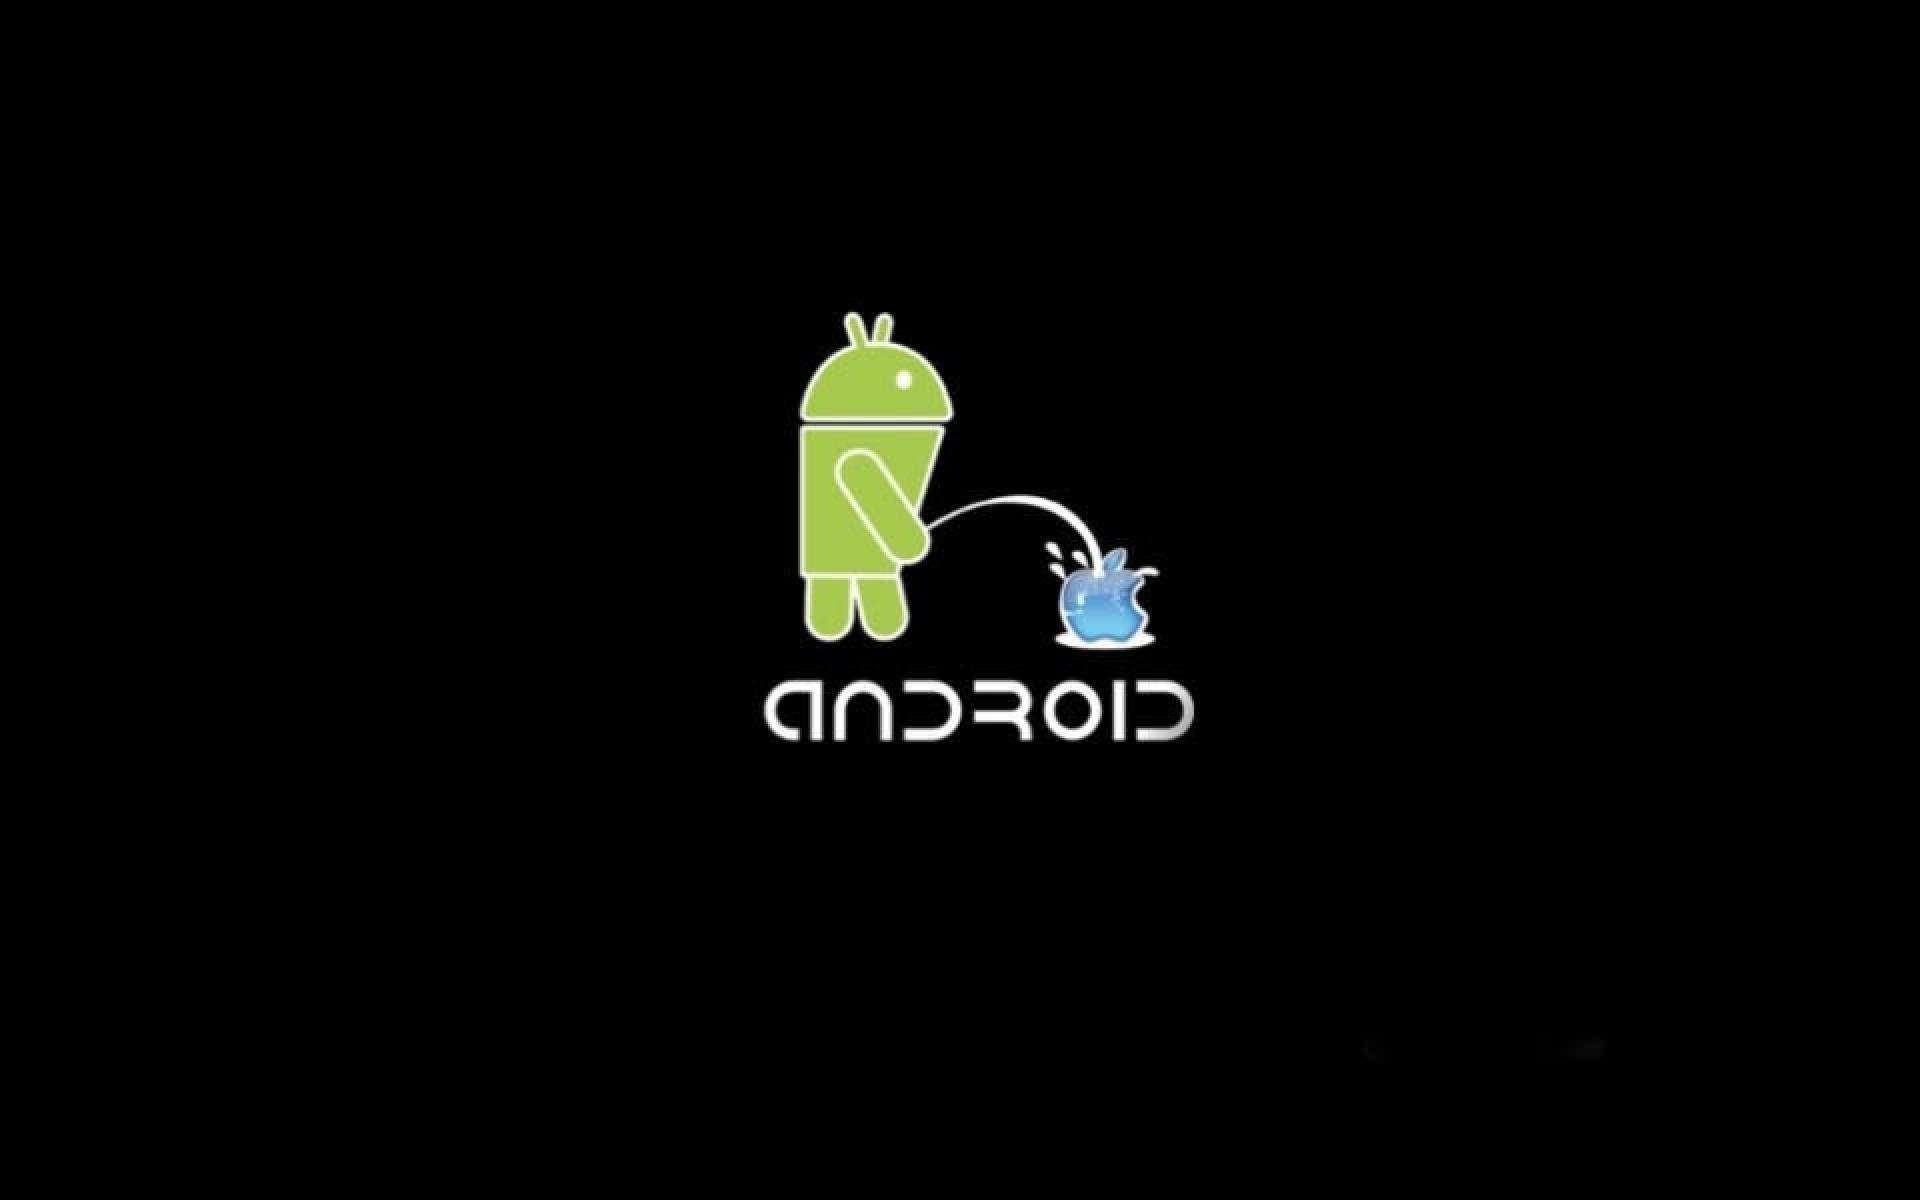 Телефон включается логотипа. Логотип андроид. Андроид против айфона. Заставки на Android. Андроид прикольные.